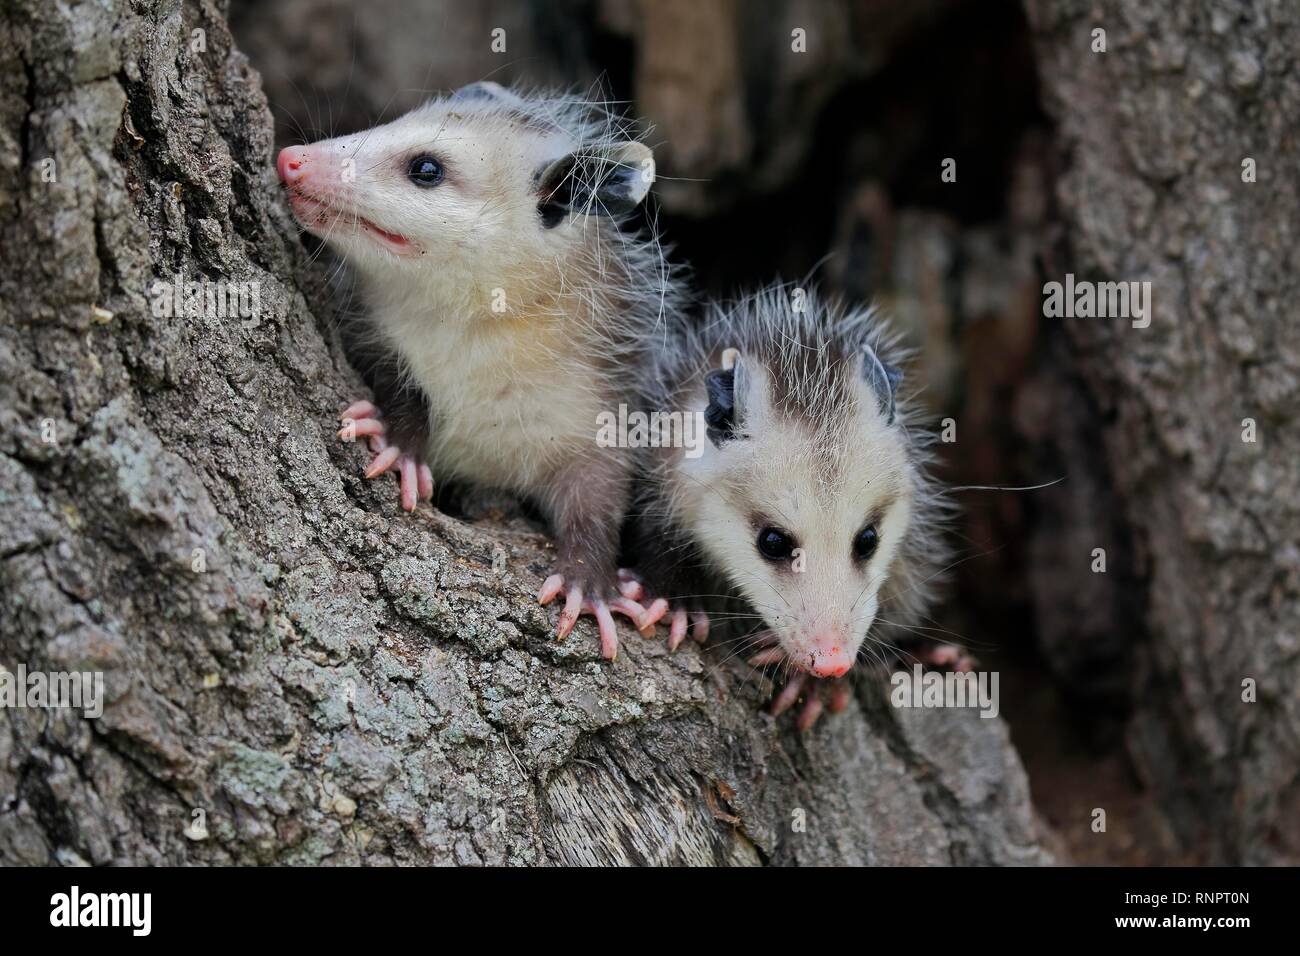 Virginia opossum (Didelphis virginiana), zwei junge Tiere auf Baumstamm, wachsam, Tier Portrait, Pine County, Minnesota, USA Stockfoto